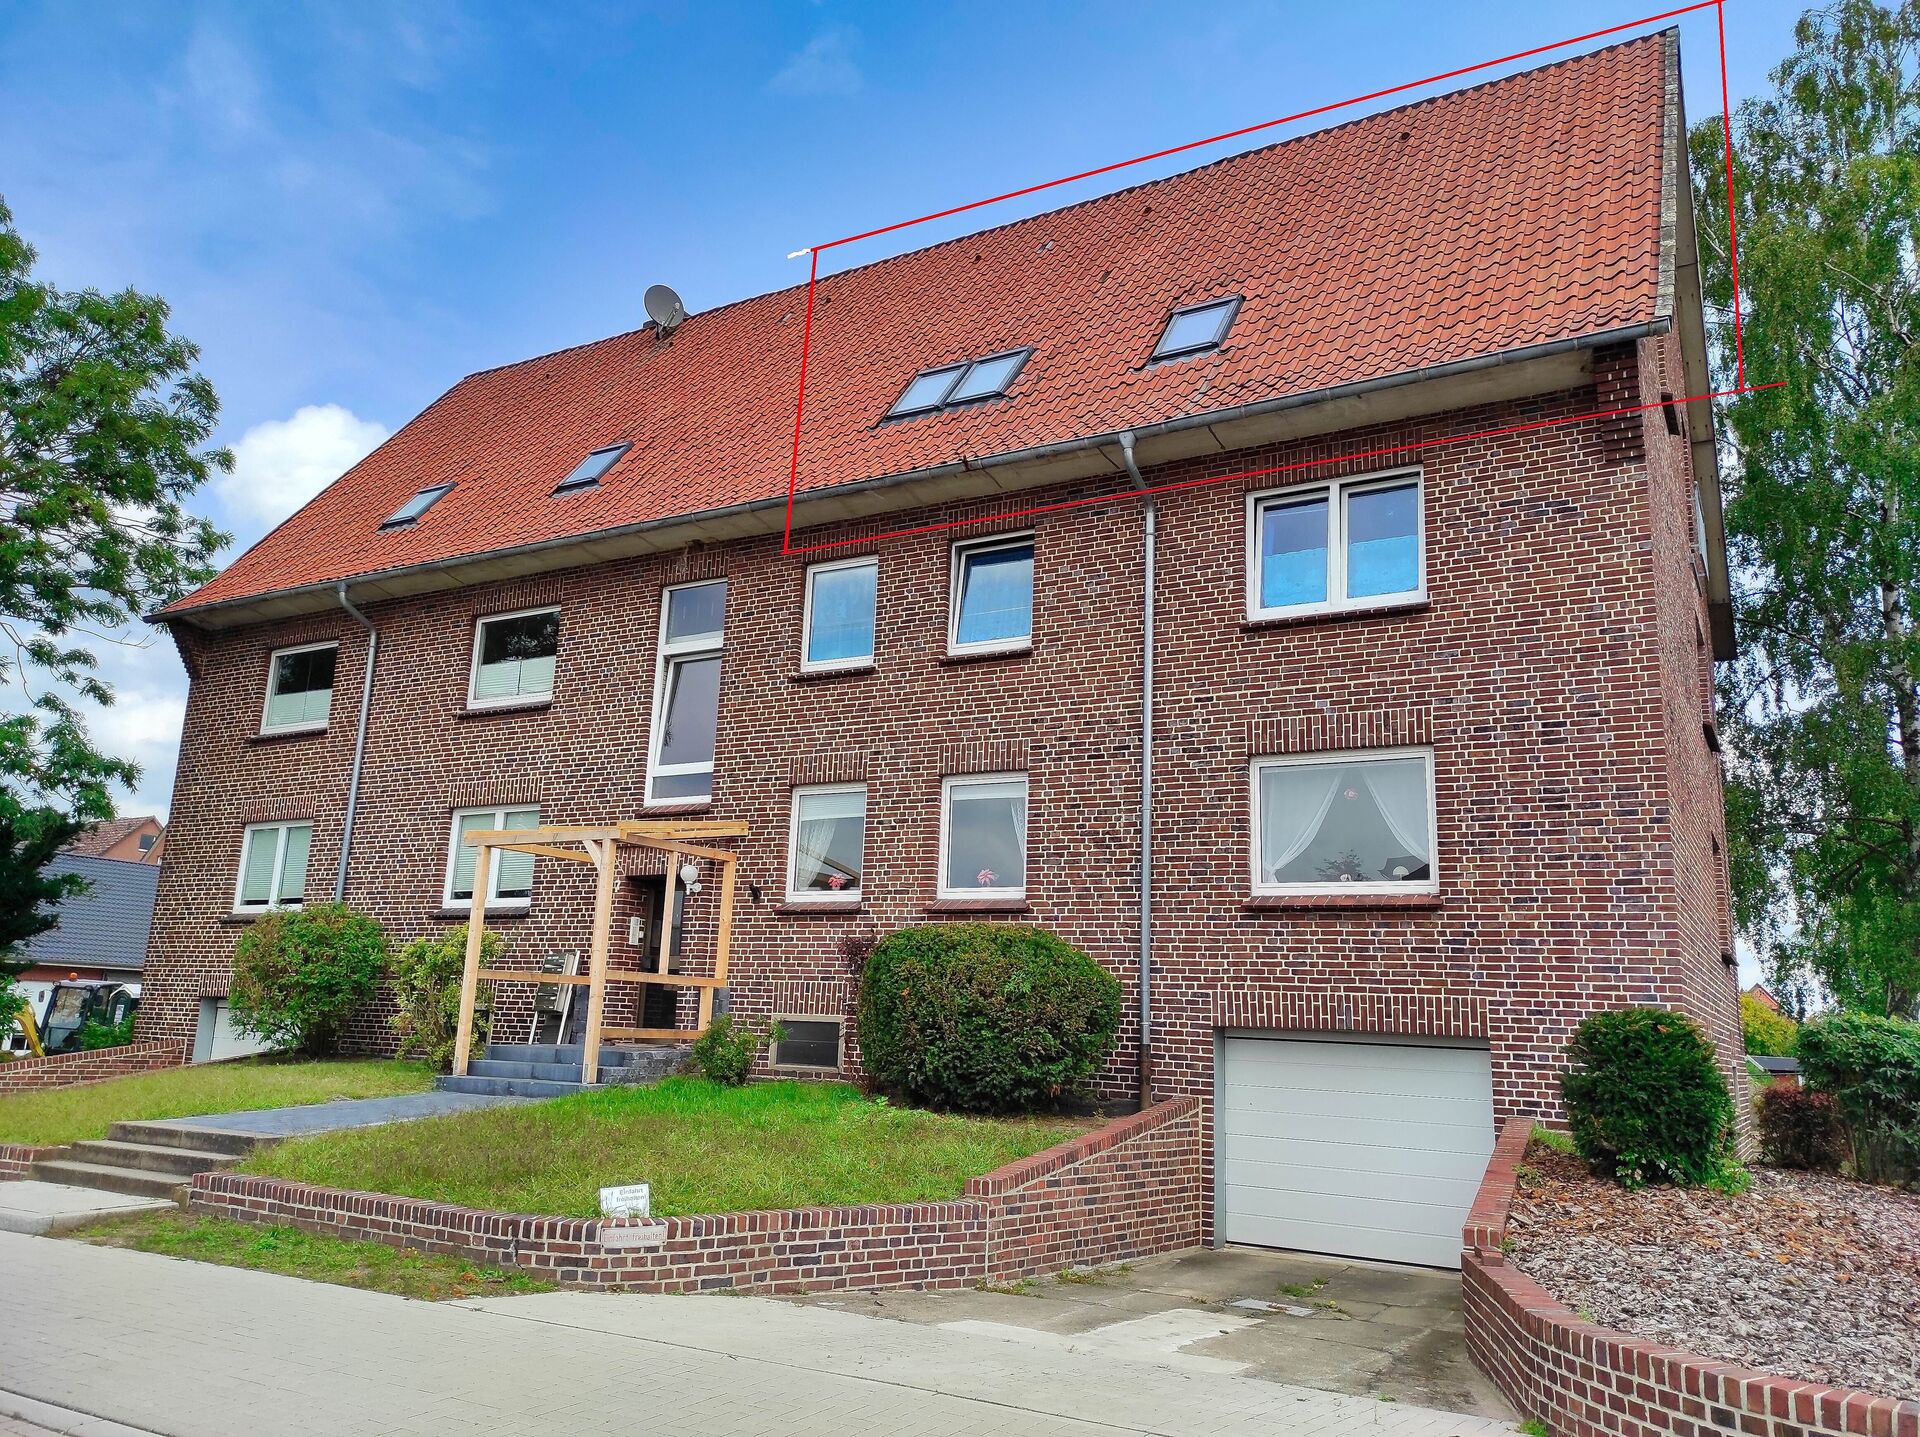 Immobilien in Lüneburg u. U. ⇒ von kaufen bis mieten